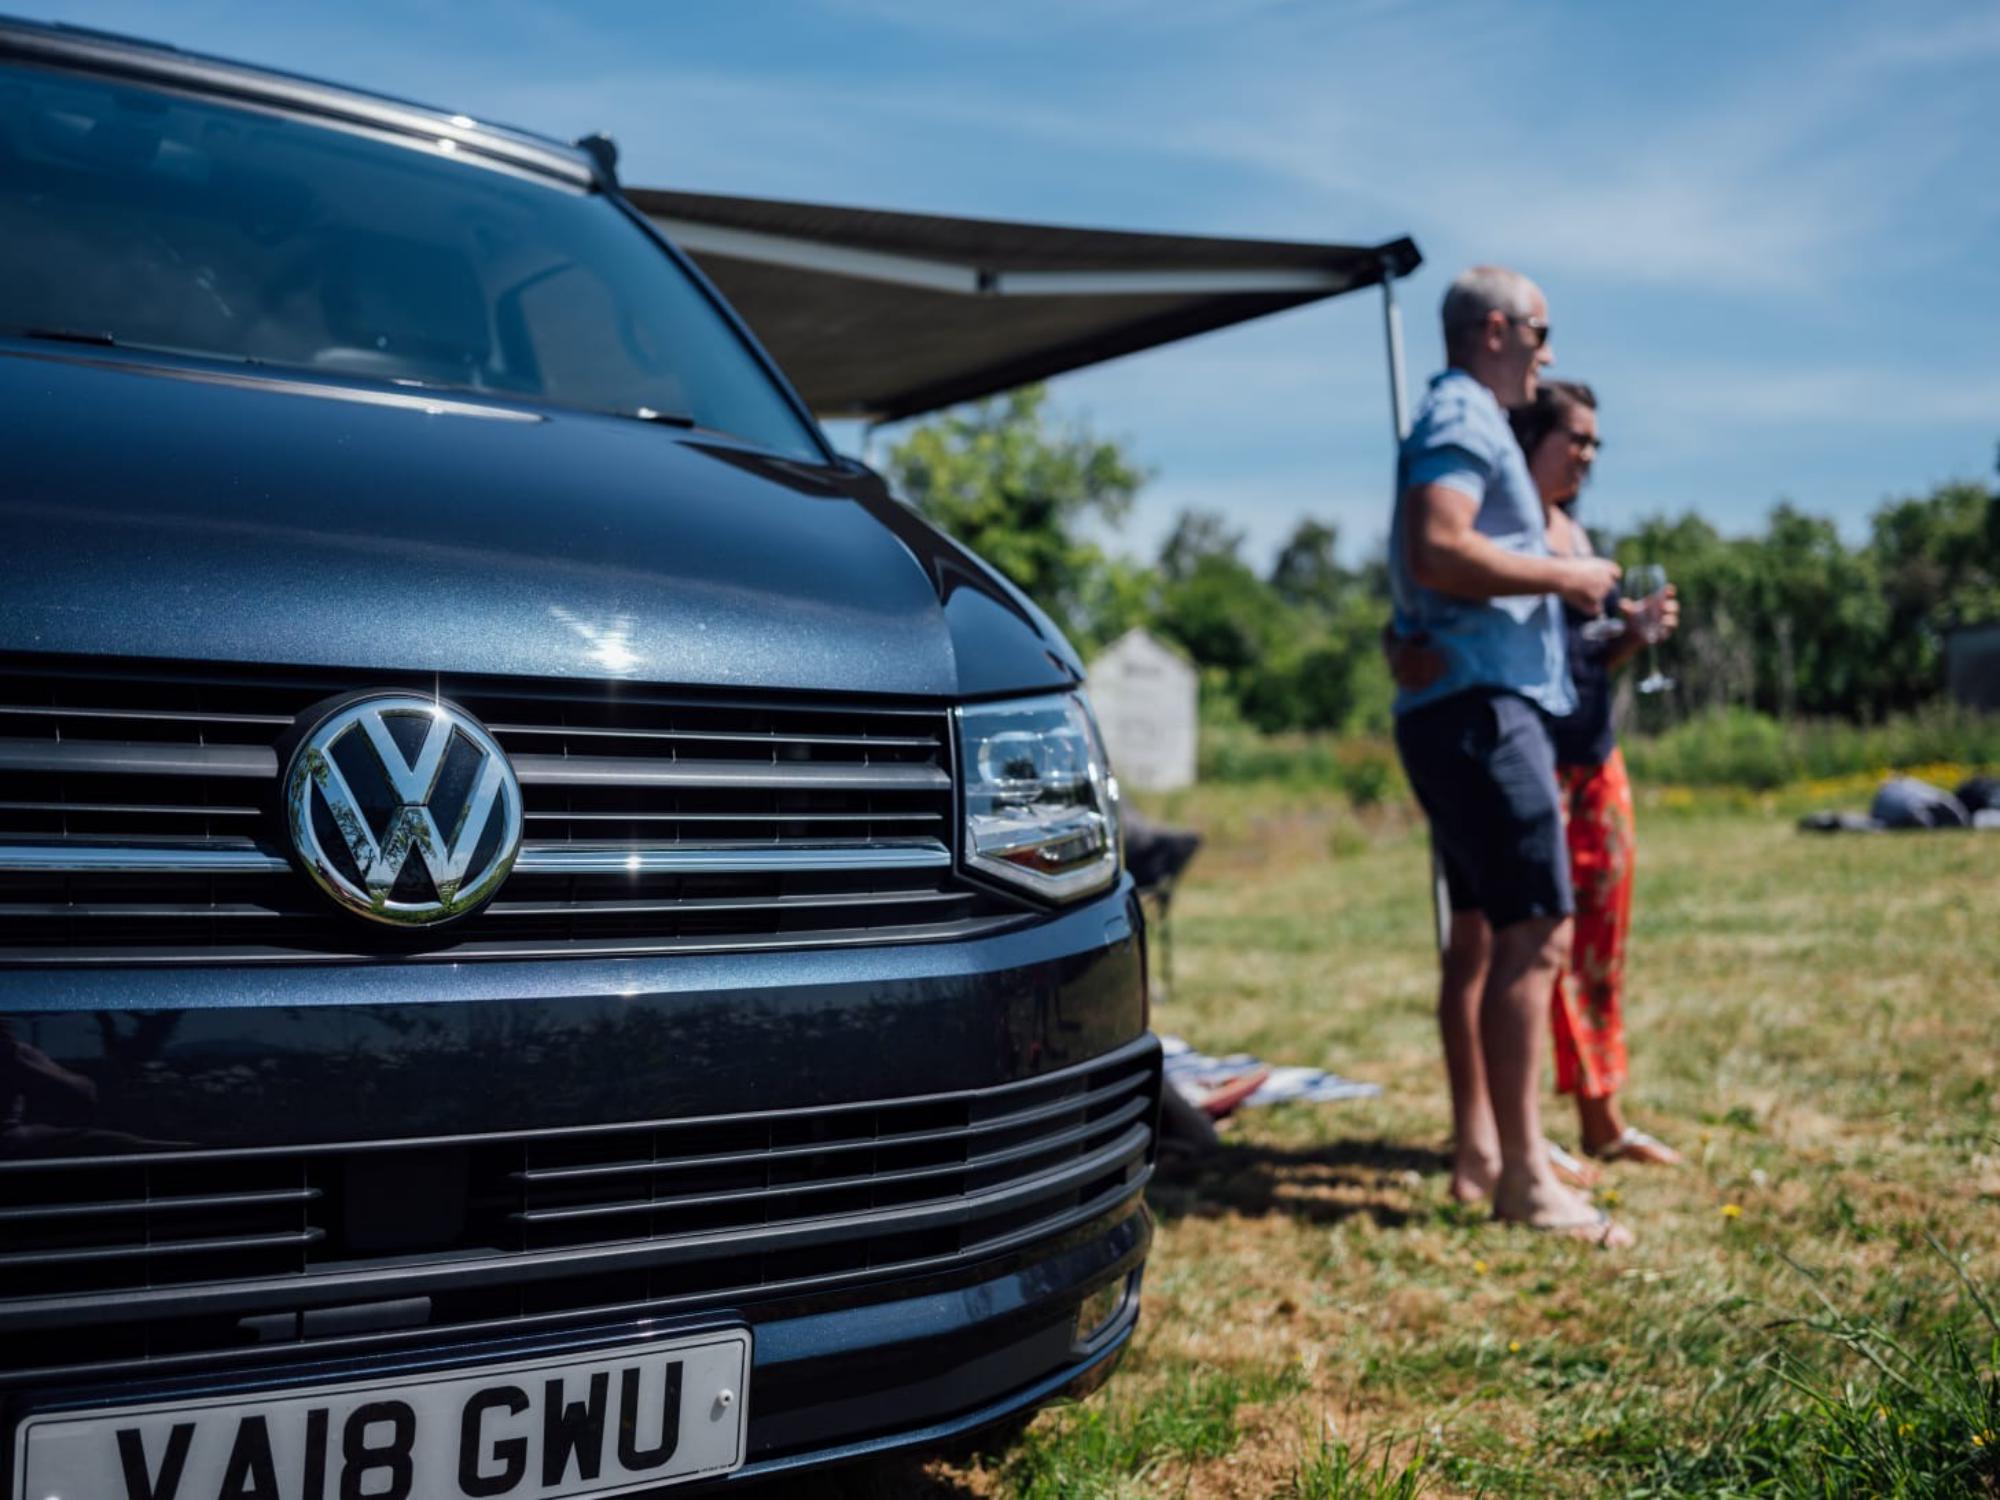 VW Campervan Hire | VW Campervan Rental in the UK